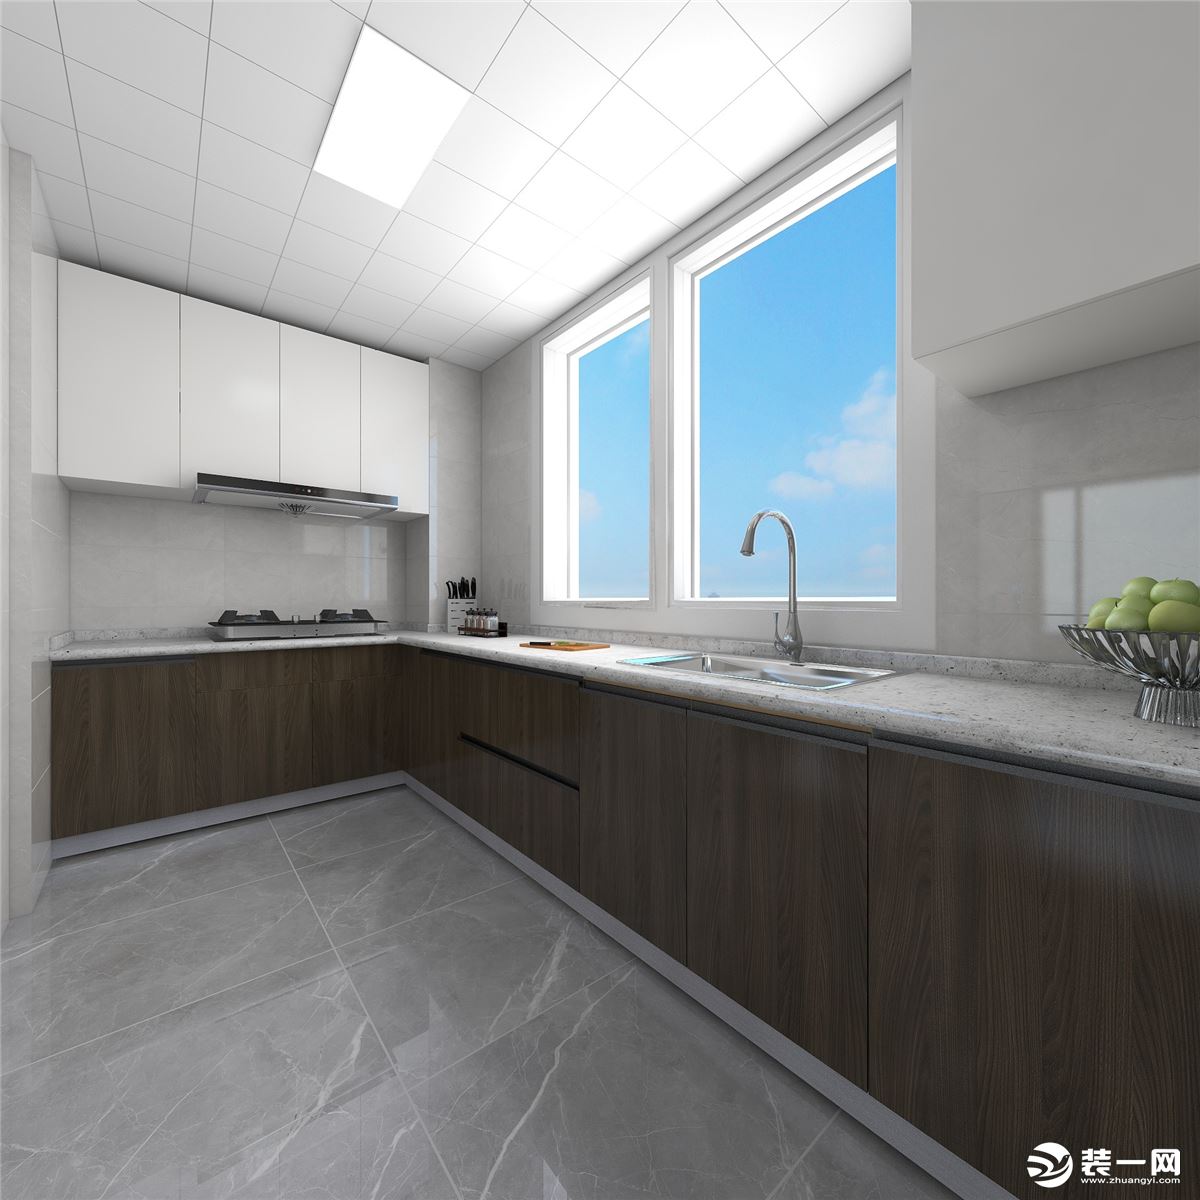  厨房考虑到实用性，充分利用空间做U型橱柜的设计，冰箱放在厨房中，吊柜也做了最大化的设计。